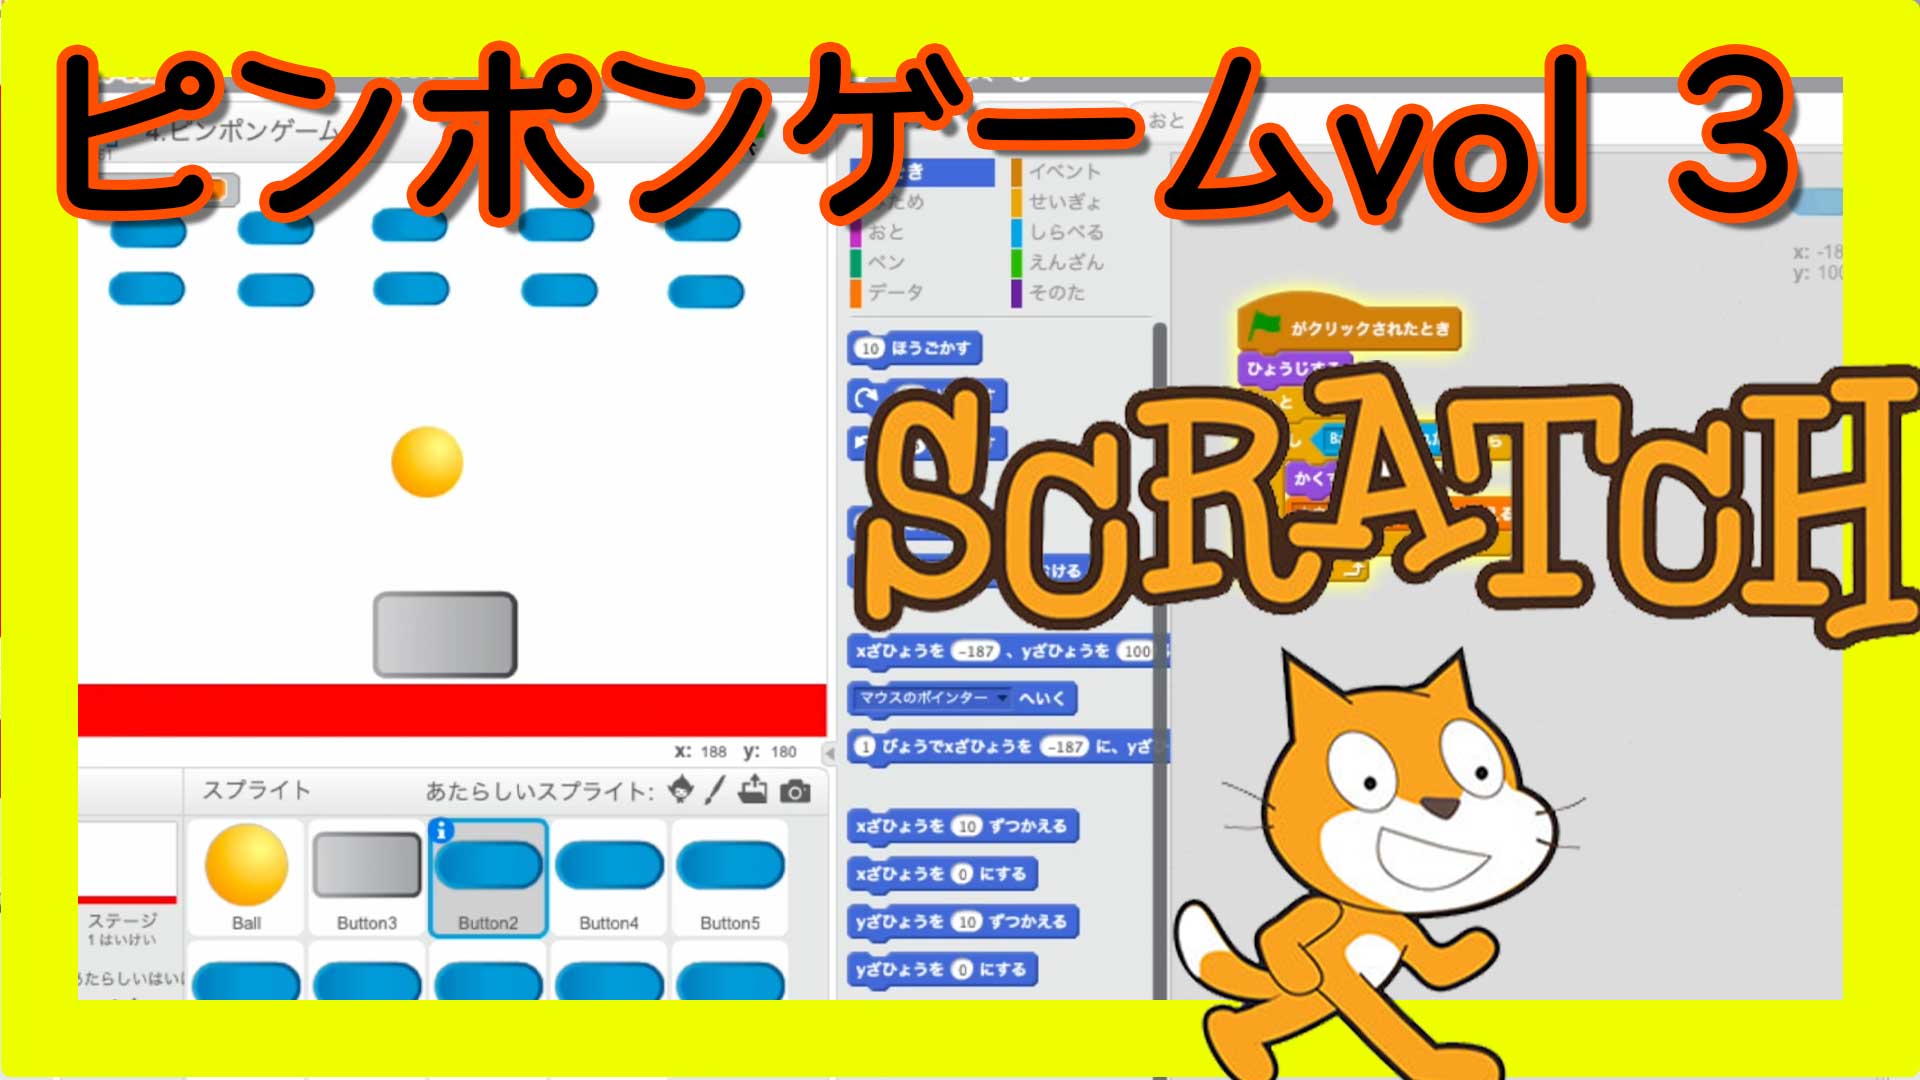 スクラッチゲーム作り方 プロジェクションマッピング作り方 Scratch Touchdesigner使い方